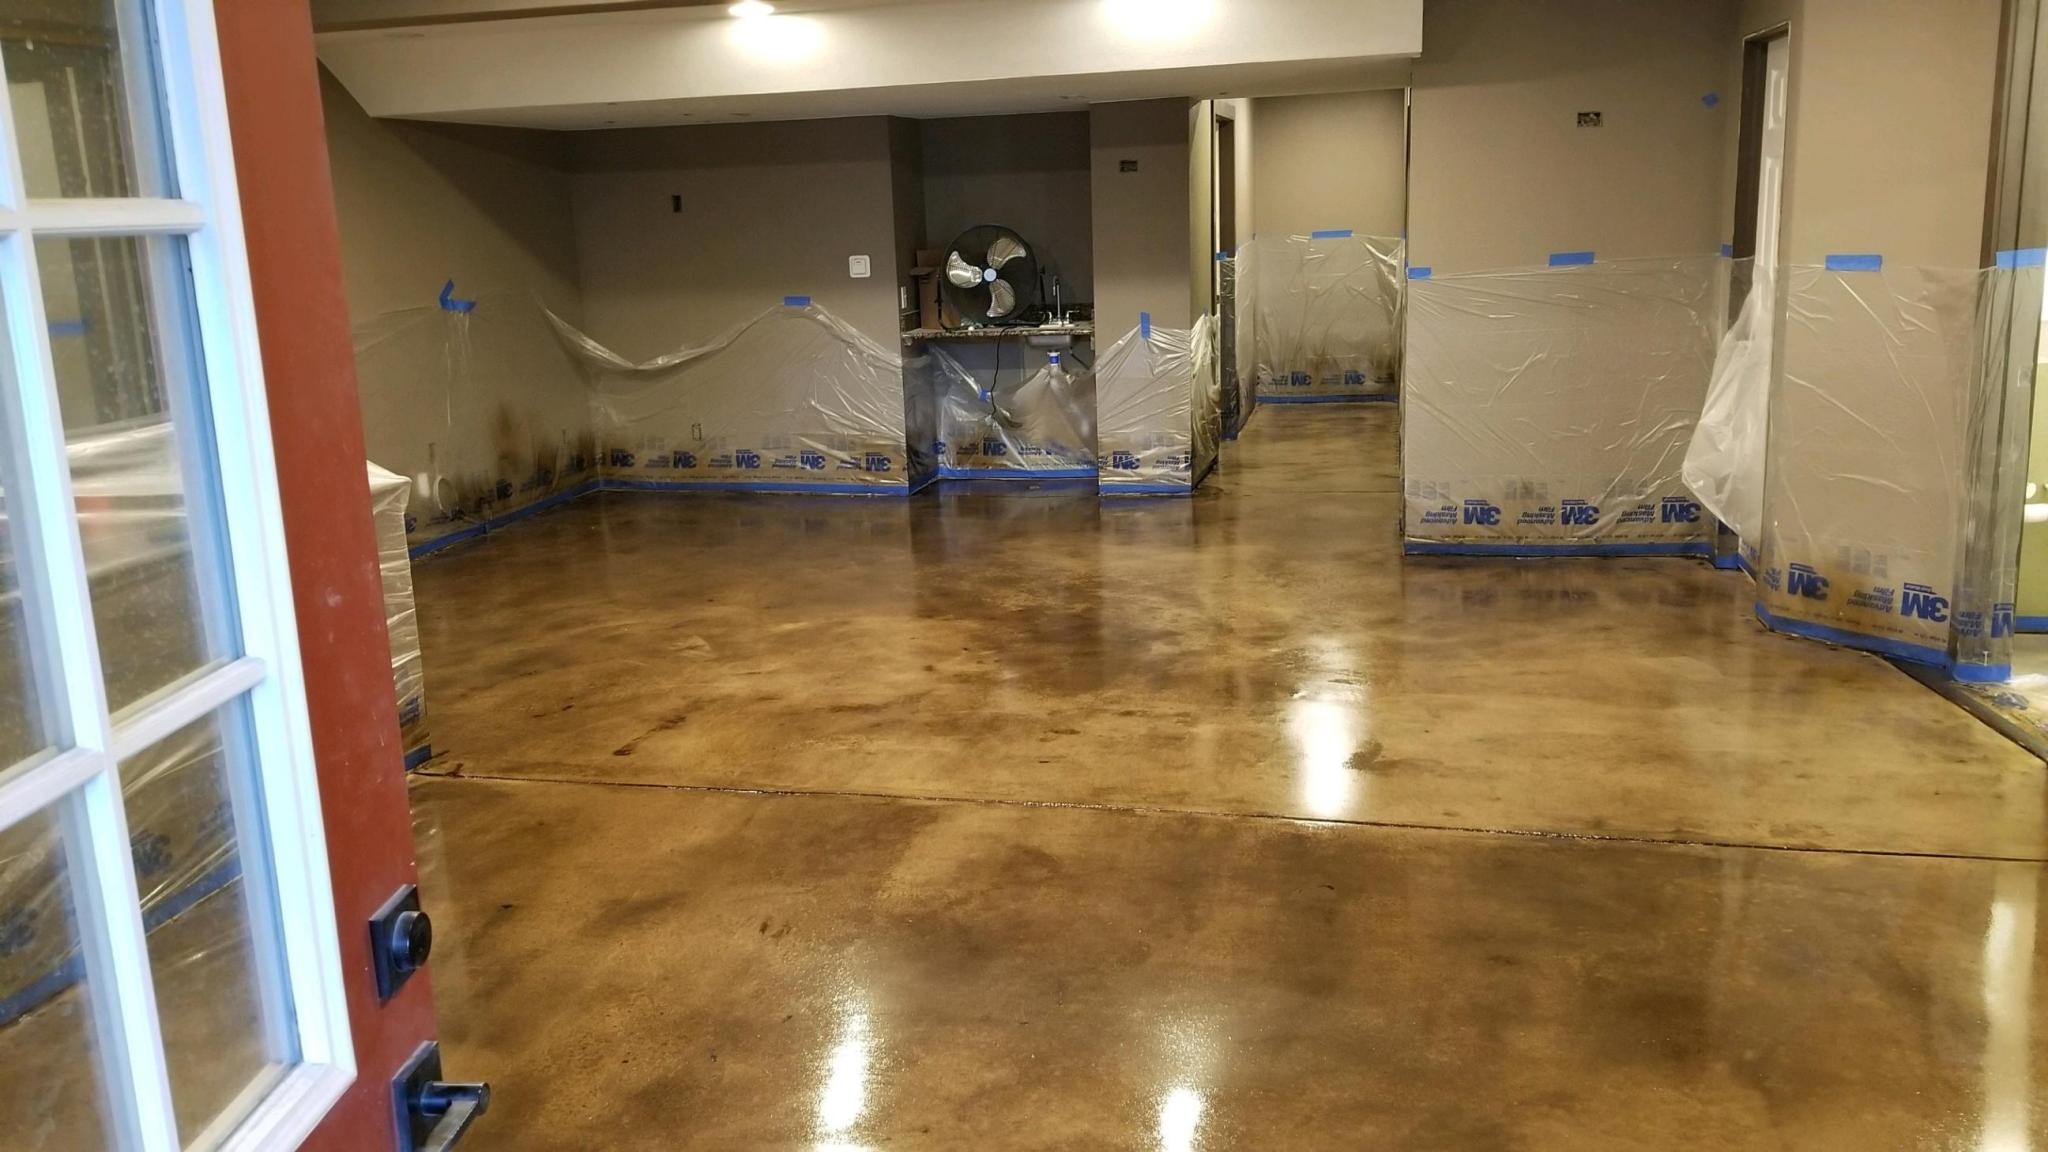 Evergreen basement remodel after flood damage.